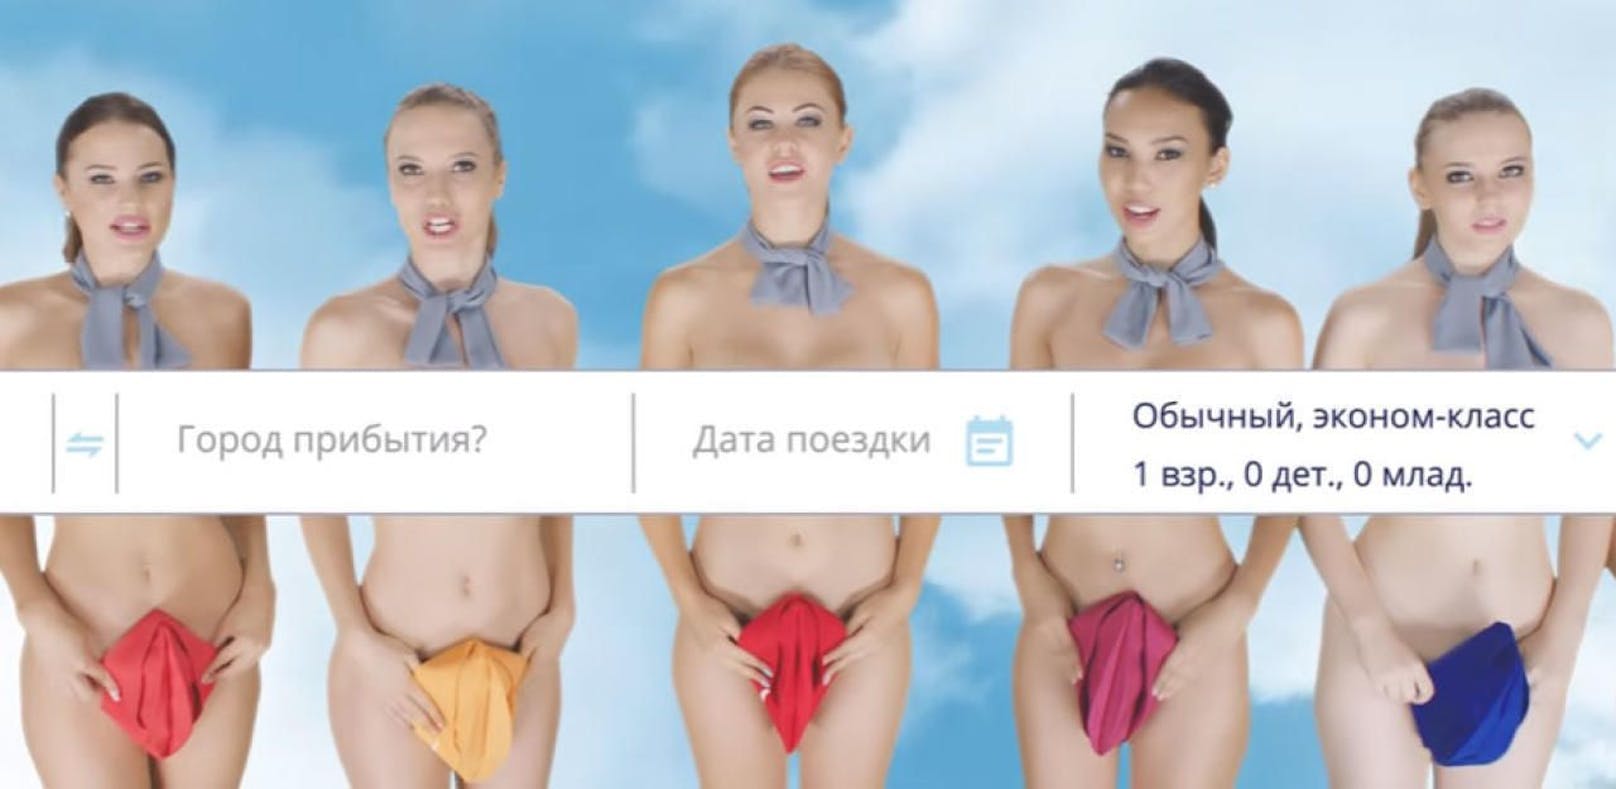 Shitstorm um Werbung mit nackten Stewardessen